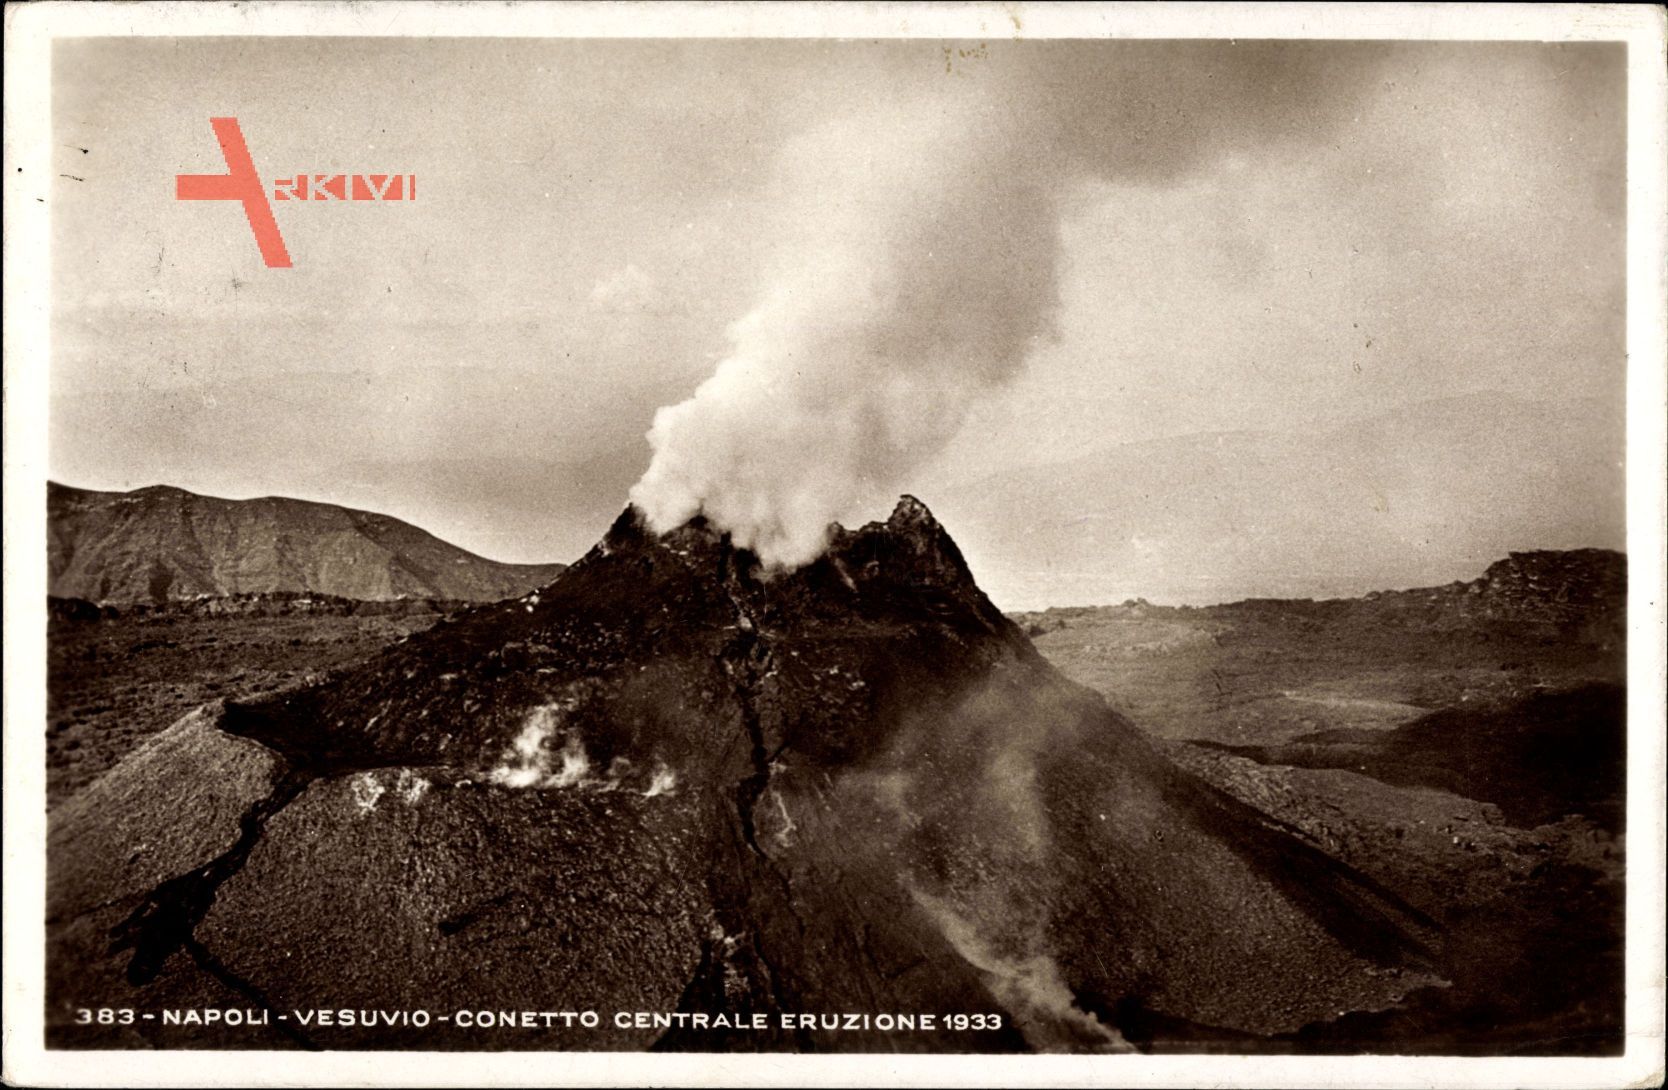 Napoli Neapel Campania, Vesuvio, Conetto Centrale Eruzione 1933, Vulkankrater